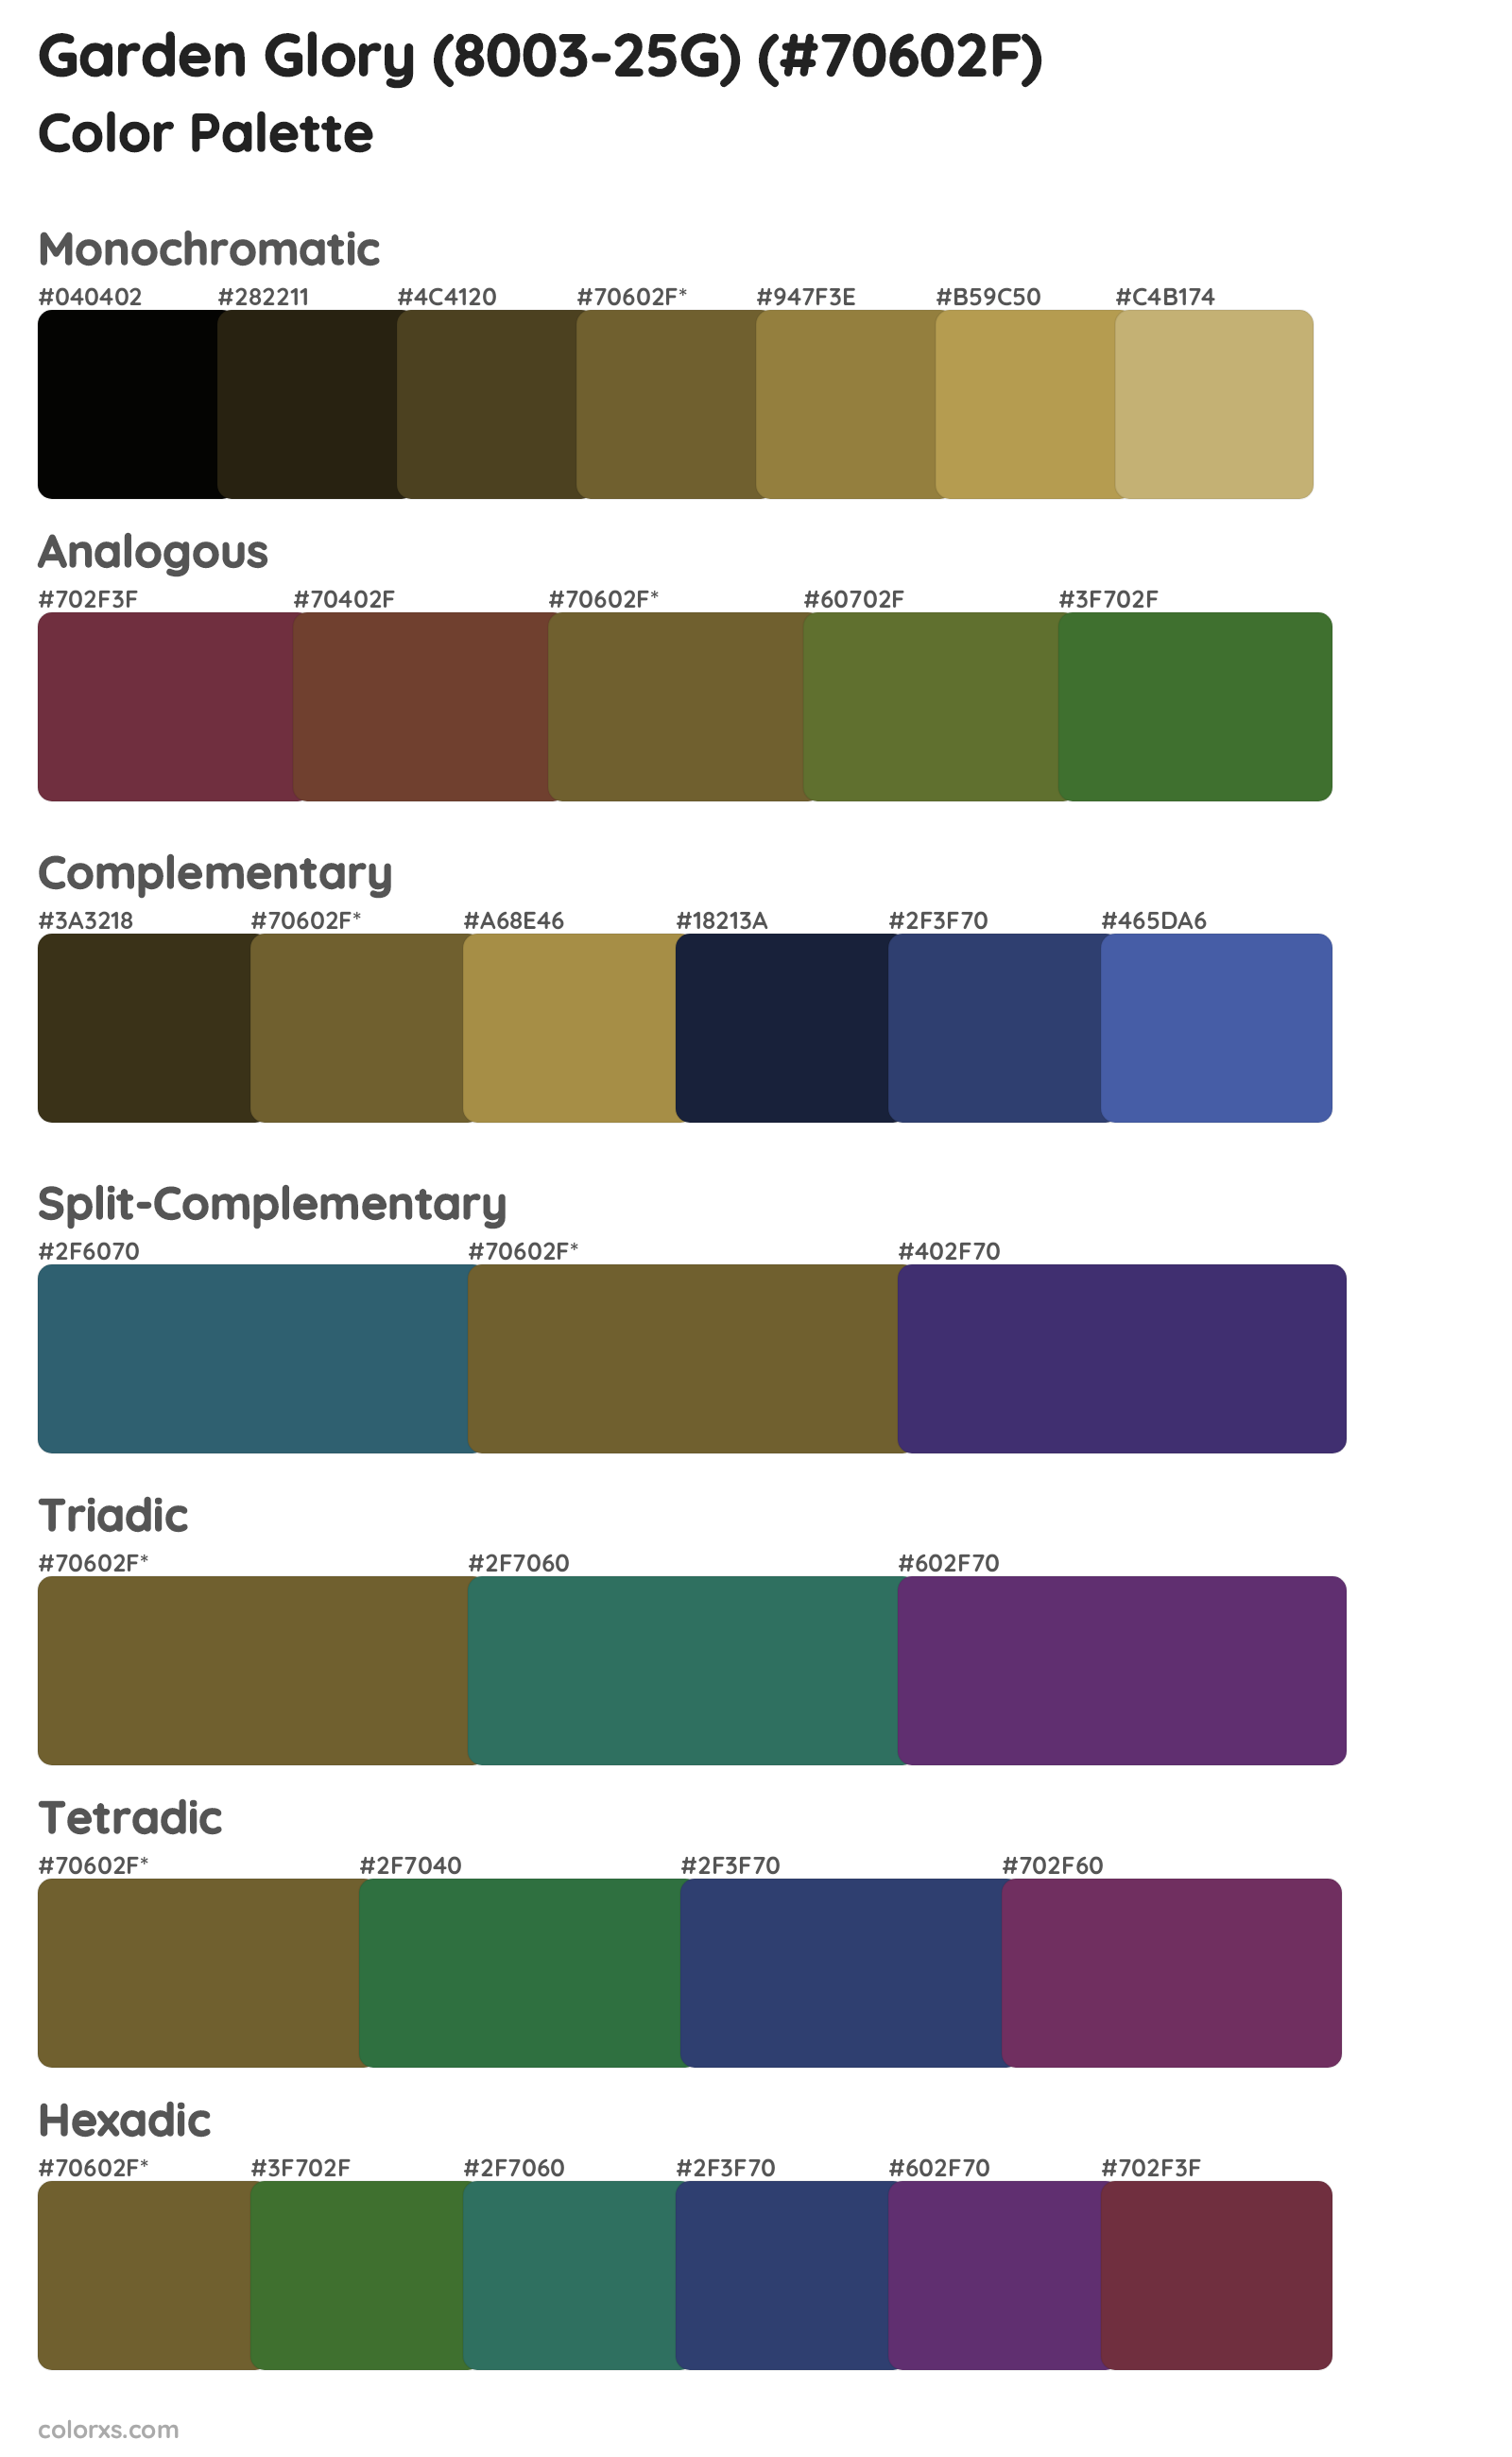 Garden Glory (8003-25G) Color Scheme Palettes